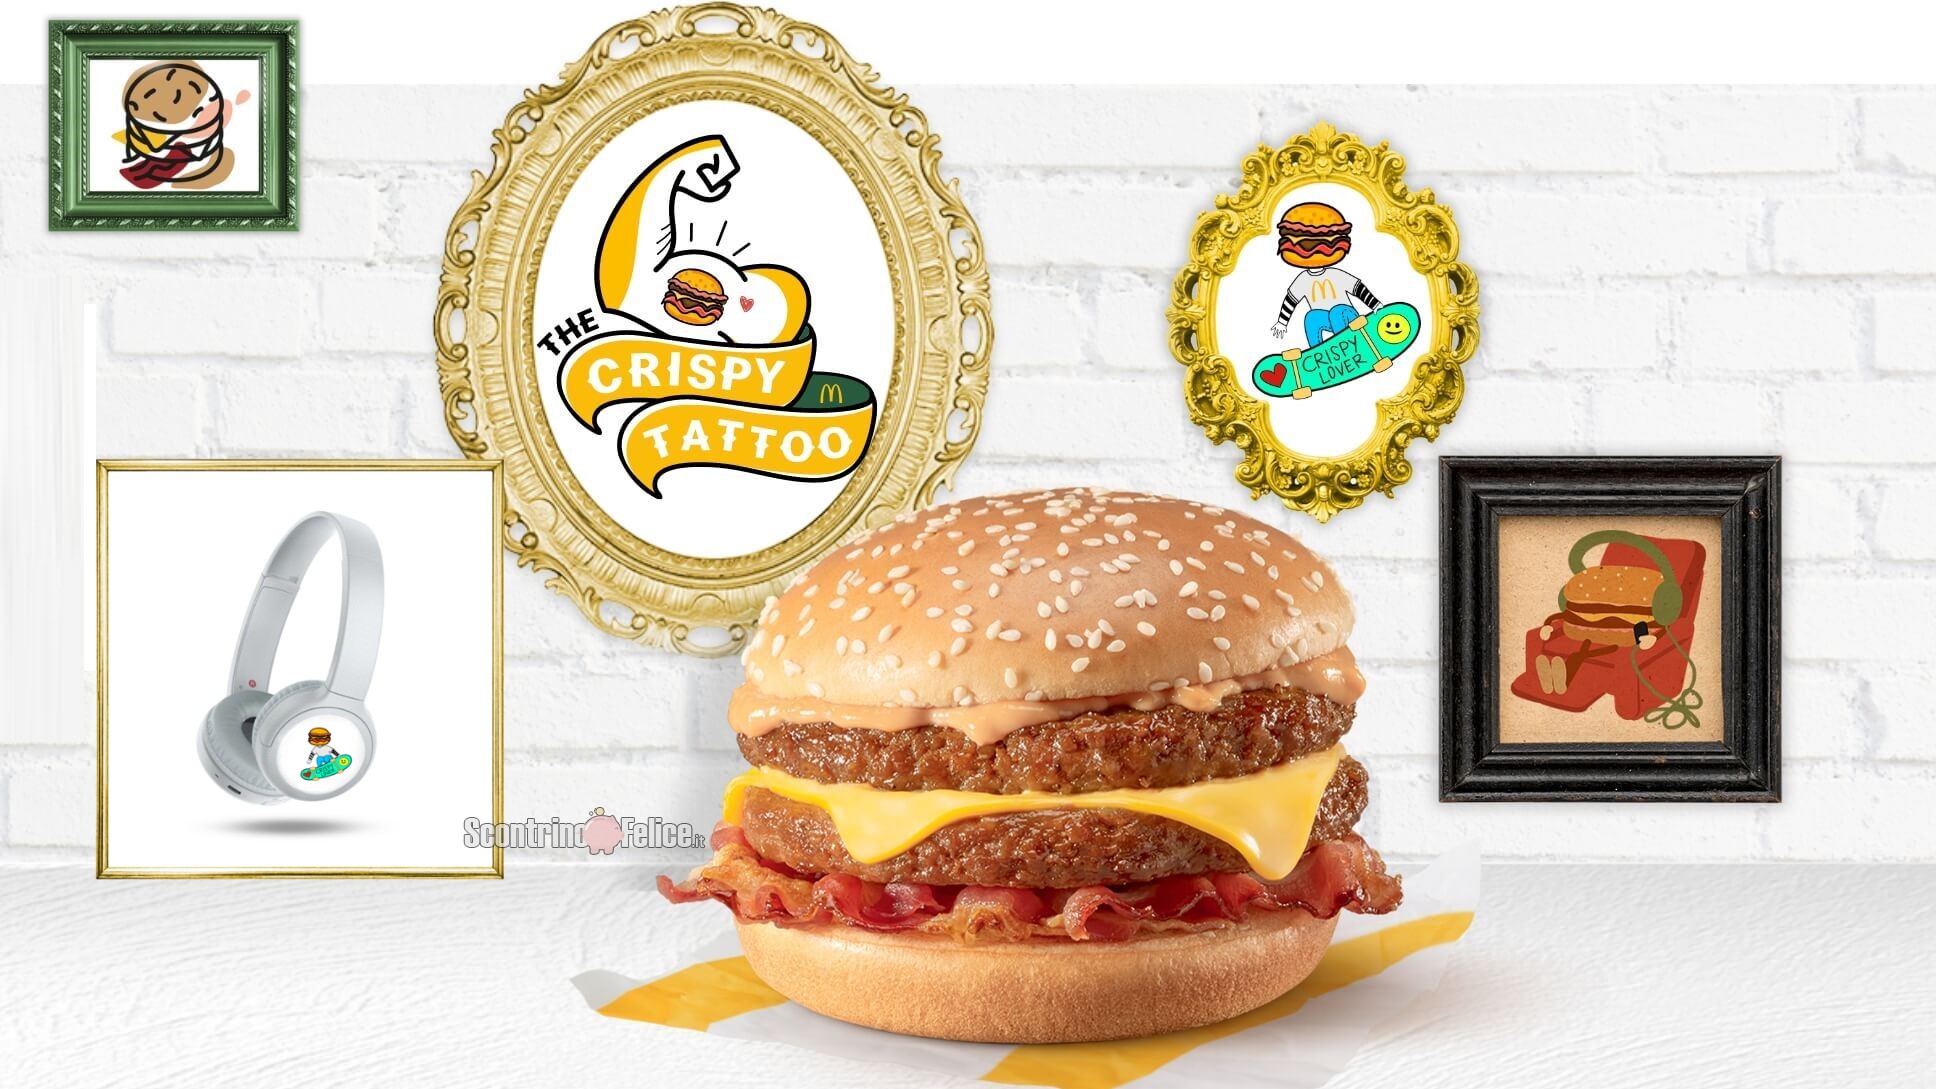 Concorso gratuito McDonald's “The Crispy Tattoo”: vinci 100 Cuffie Sony Bluetooth brandizzate